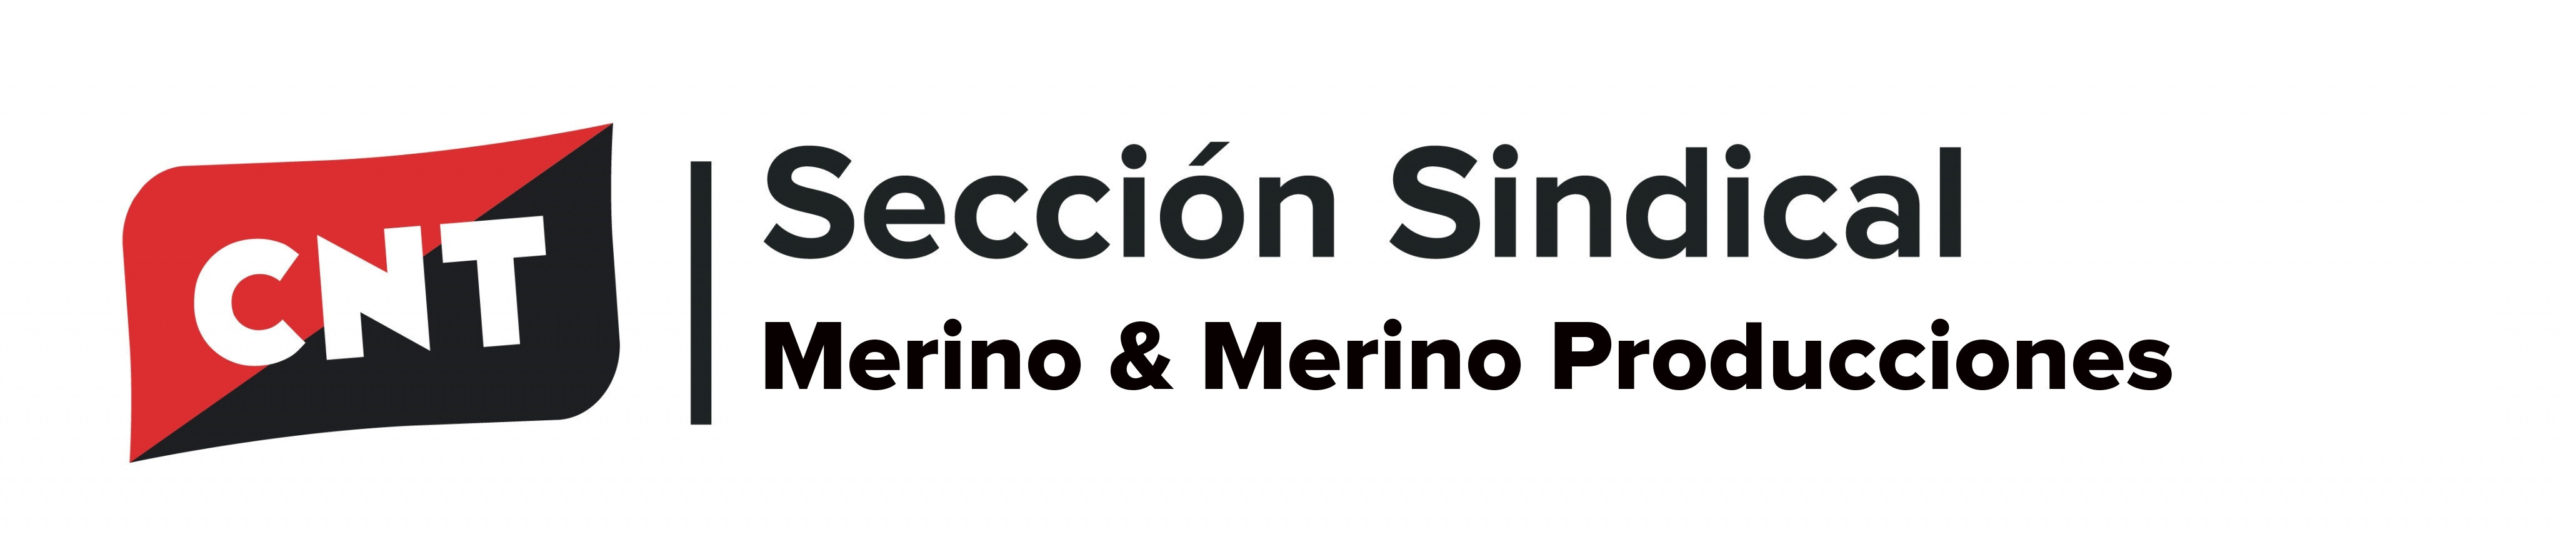 La sección sindical de CNT Merino&Merino toma acciones legales contra la empresa por irregularidades en las vacaciones